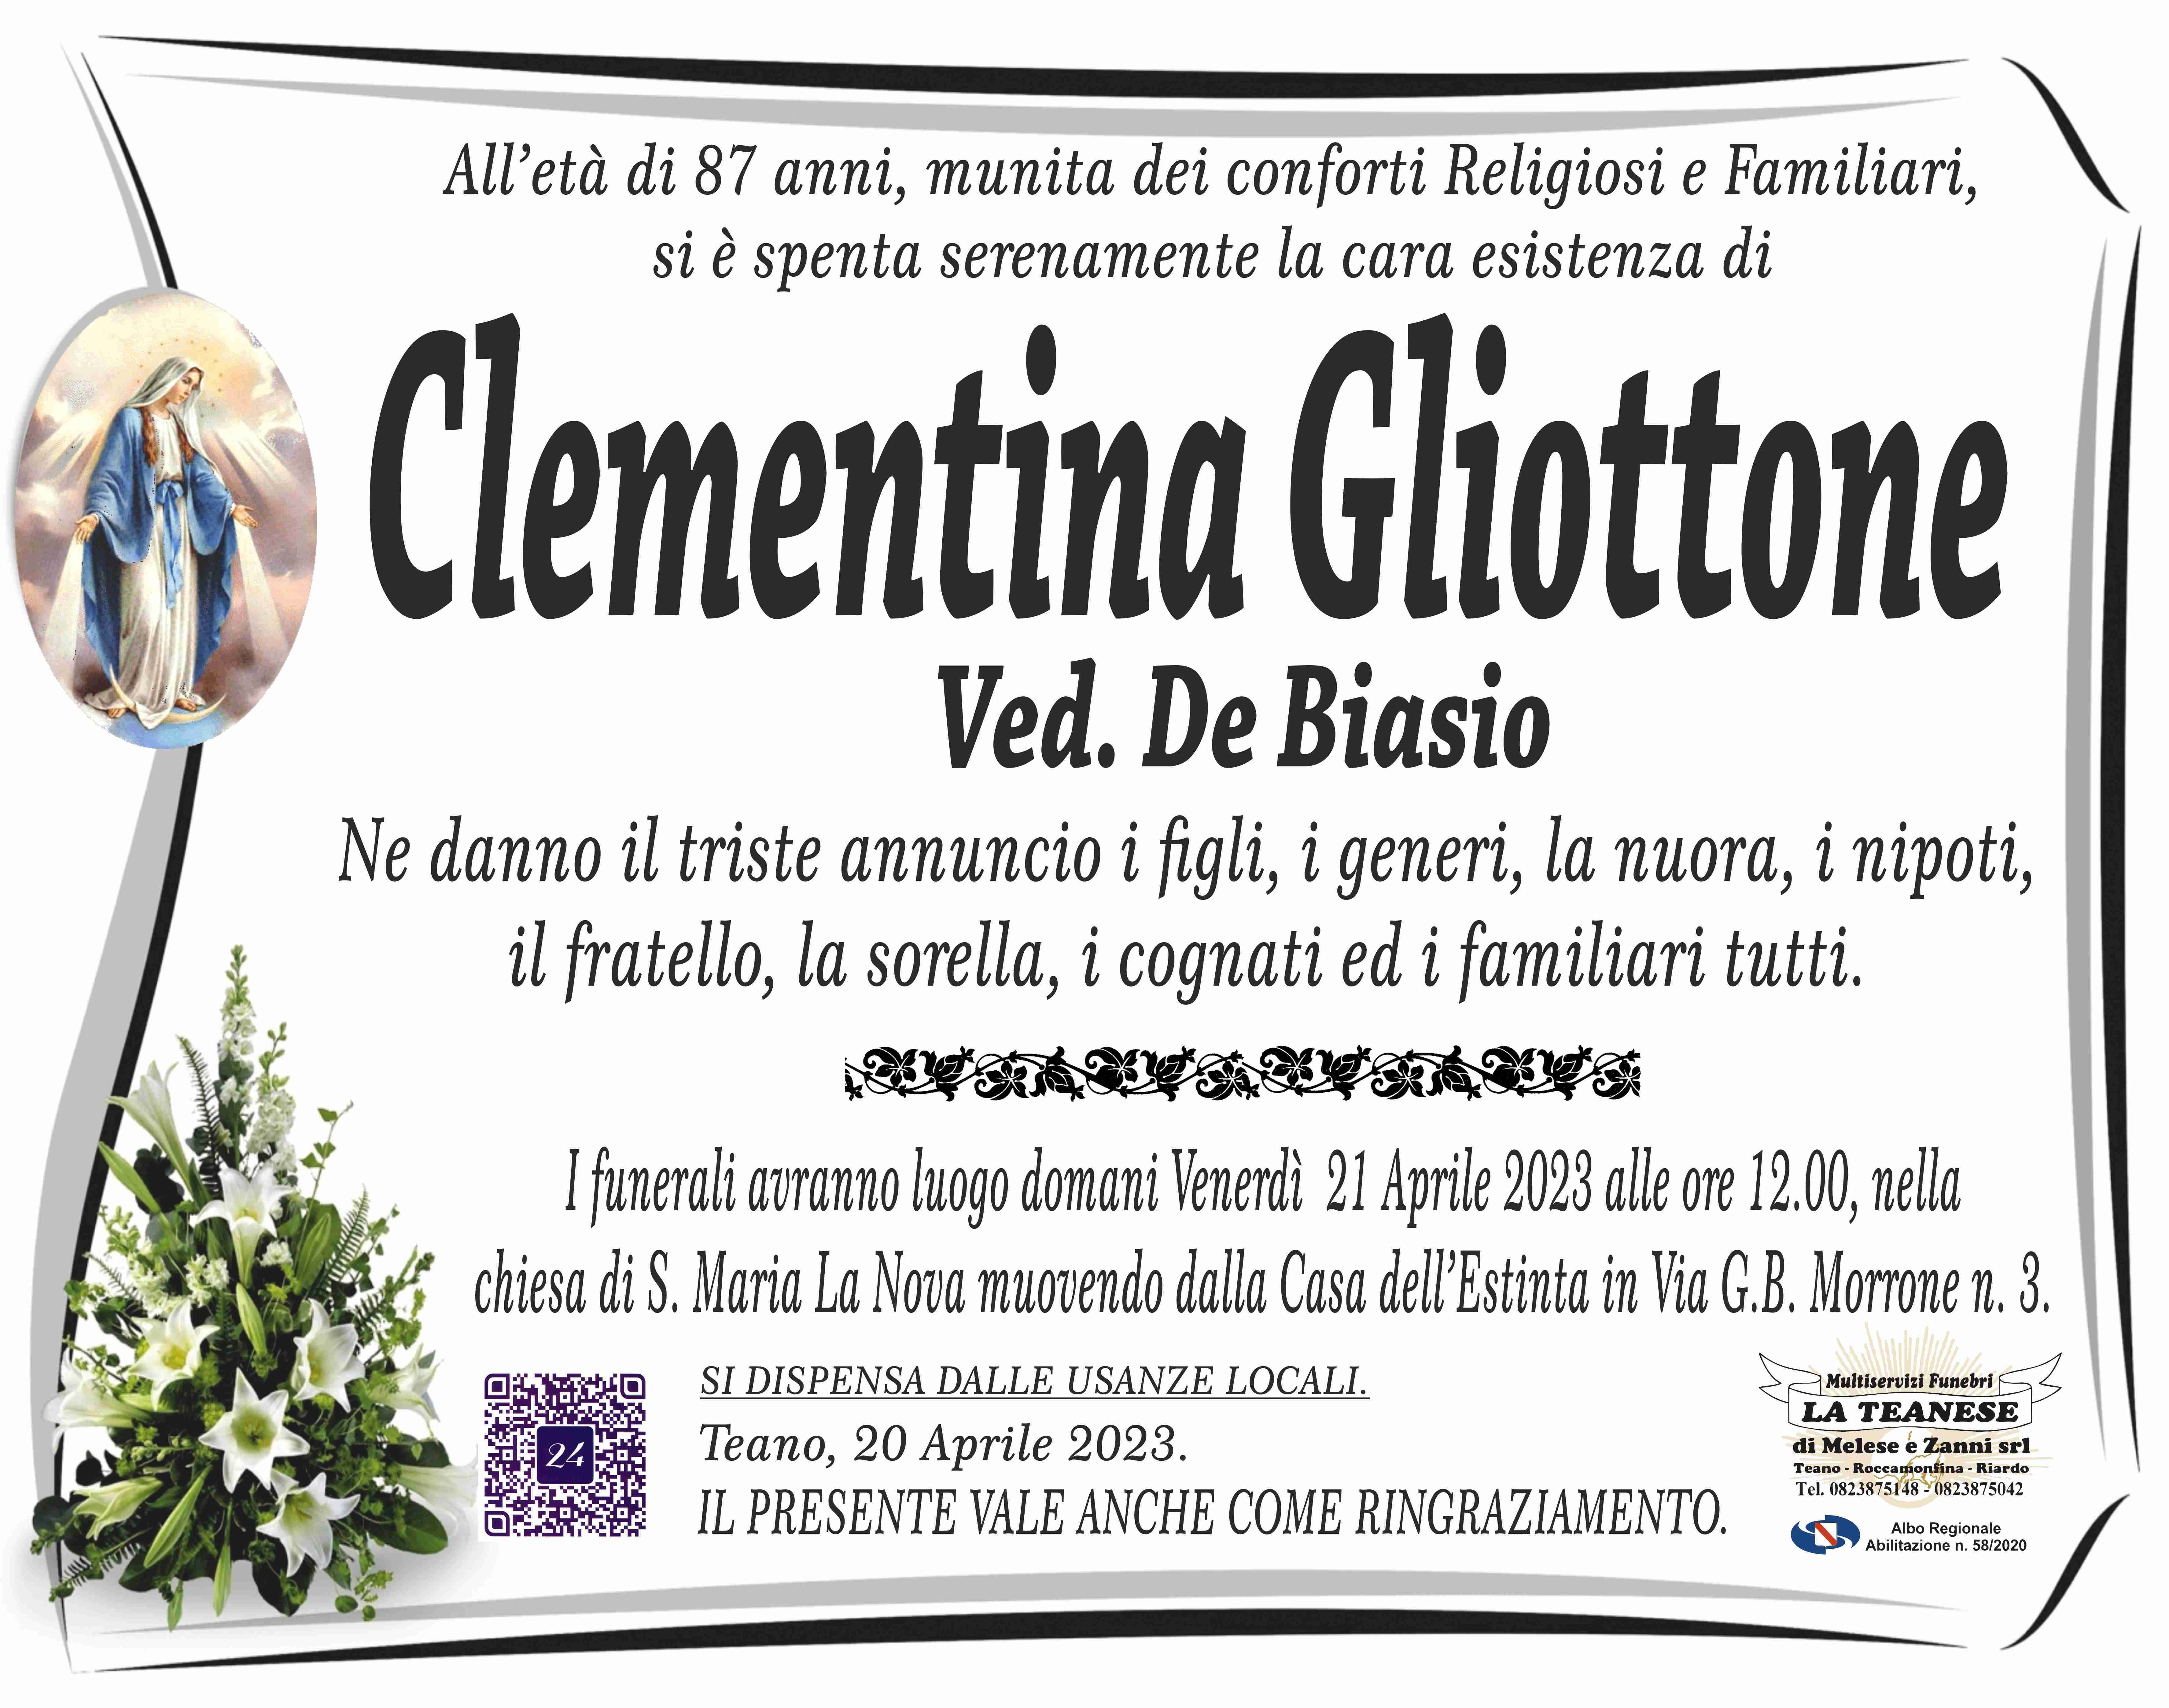 Clementina Gliottone